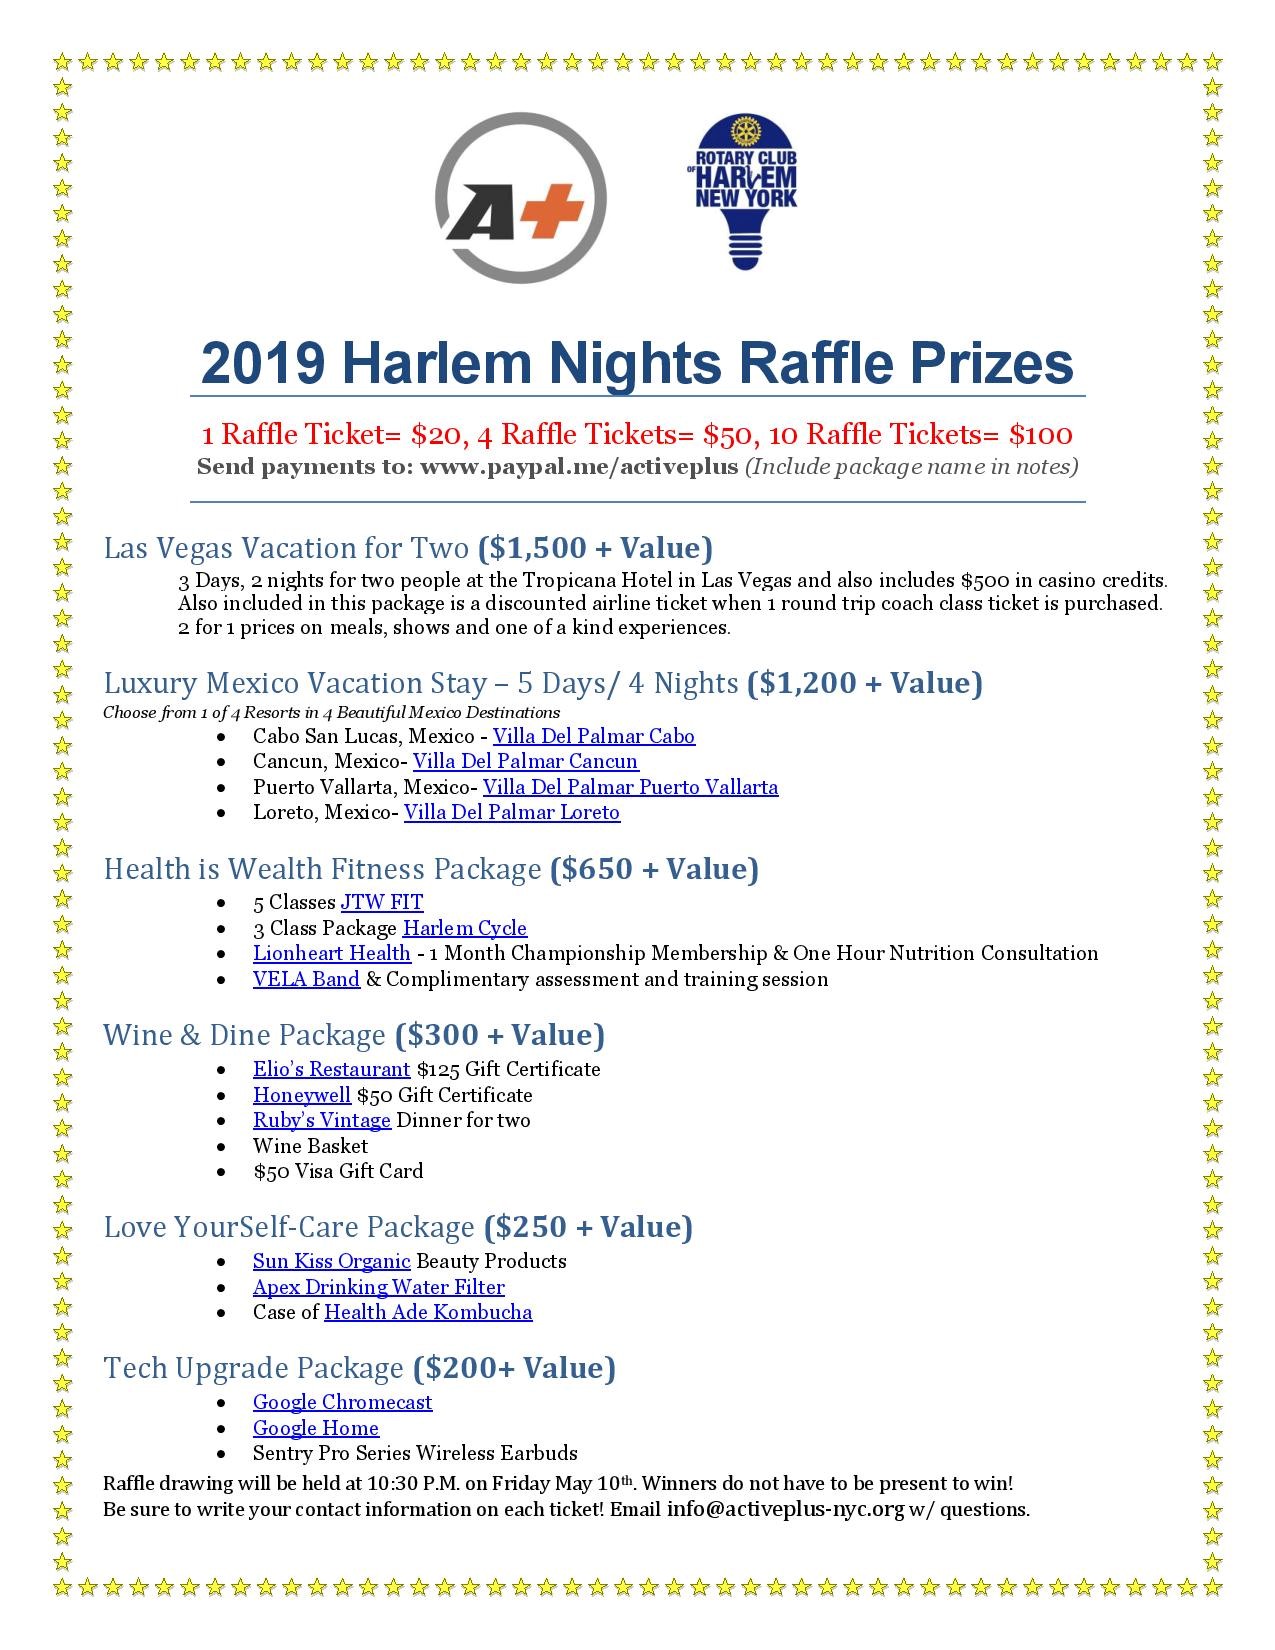 Harlem Nights Raffle 2019 Revised